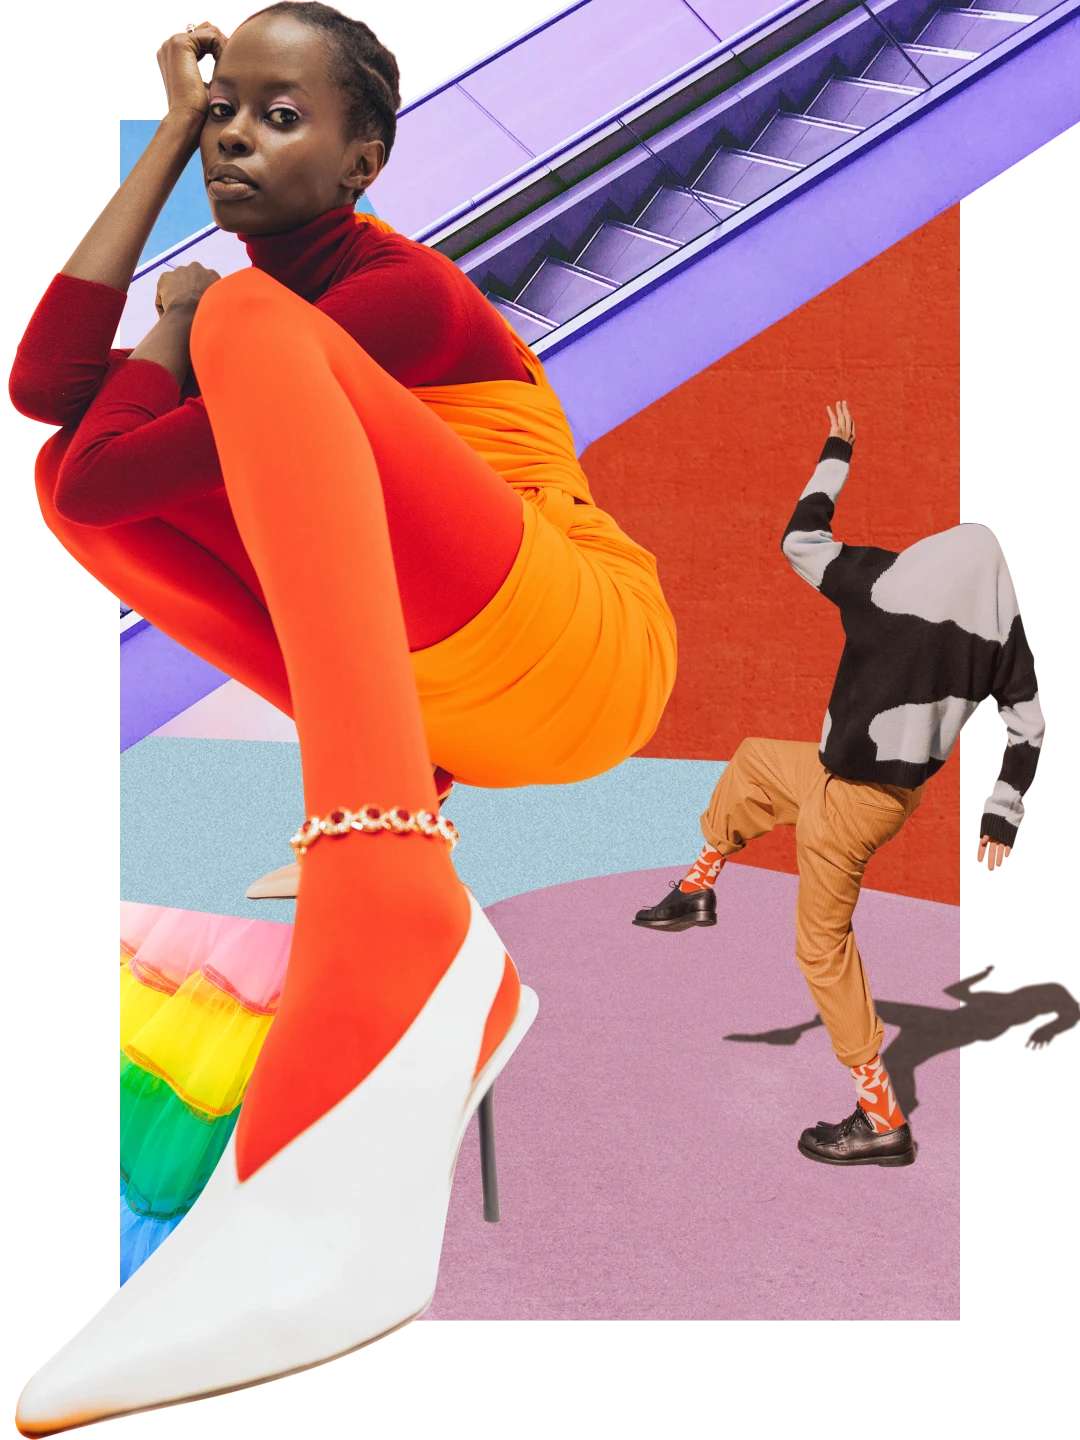 Collage de prendas y colores brillantes. Mujer de piel oscura a la izquierda con ropa naranja brillante. Una persona a la derecha con un suéter estampado sobre la cabeza, pantalones naranja y calcetines naranja. Una escalera mecánica violeta en el fondo, en la parte superior.
